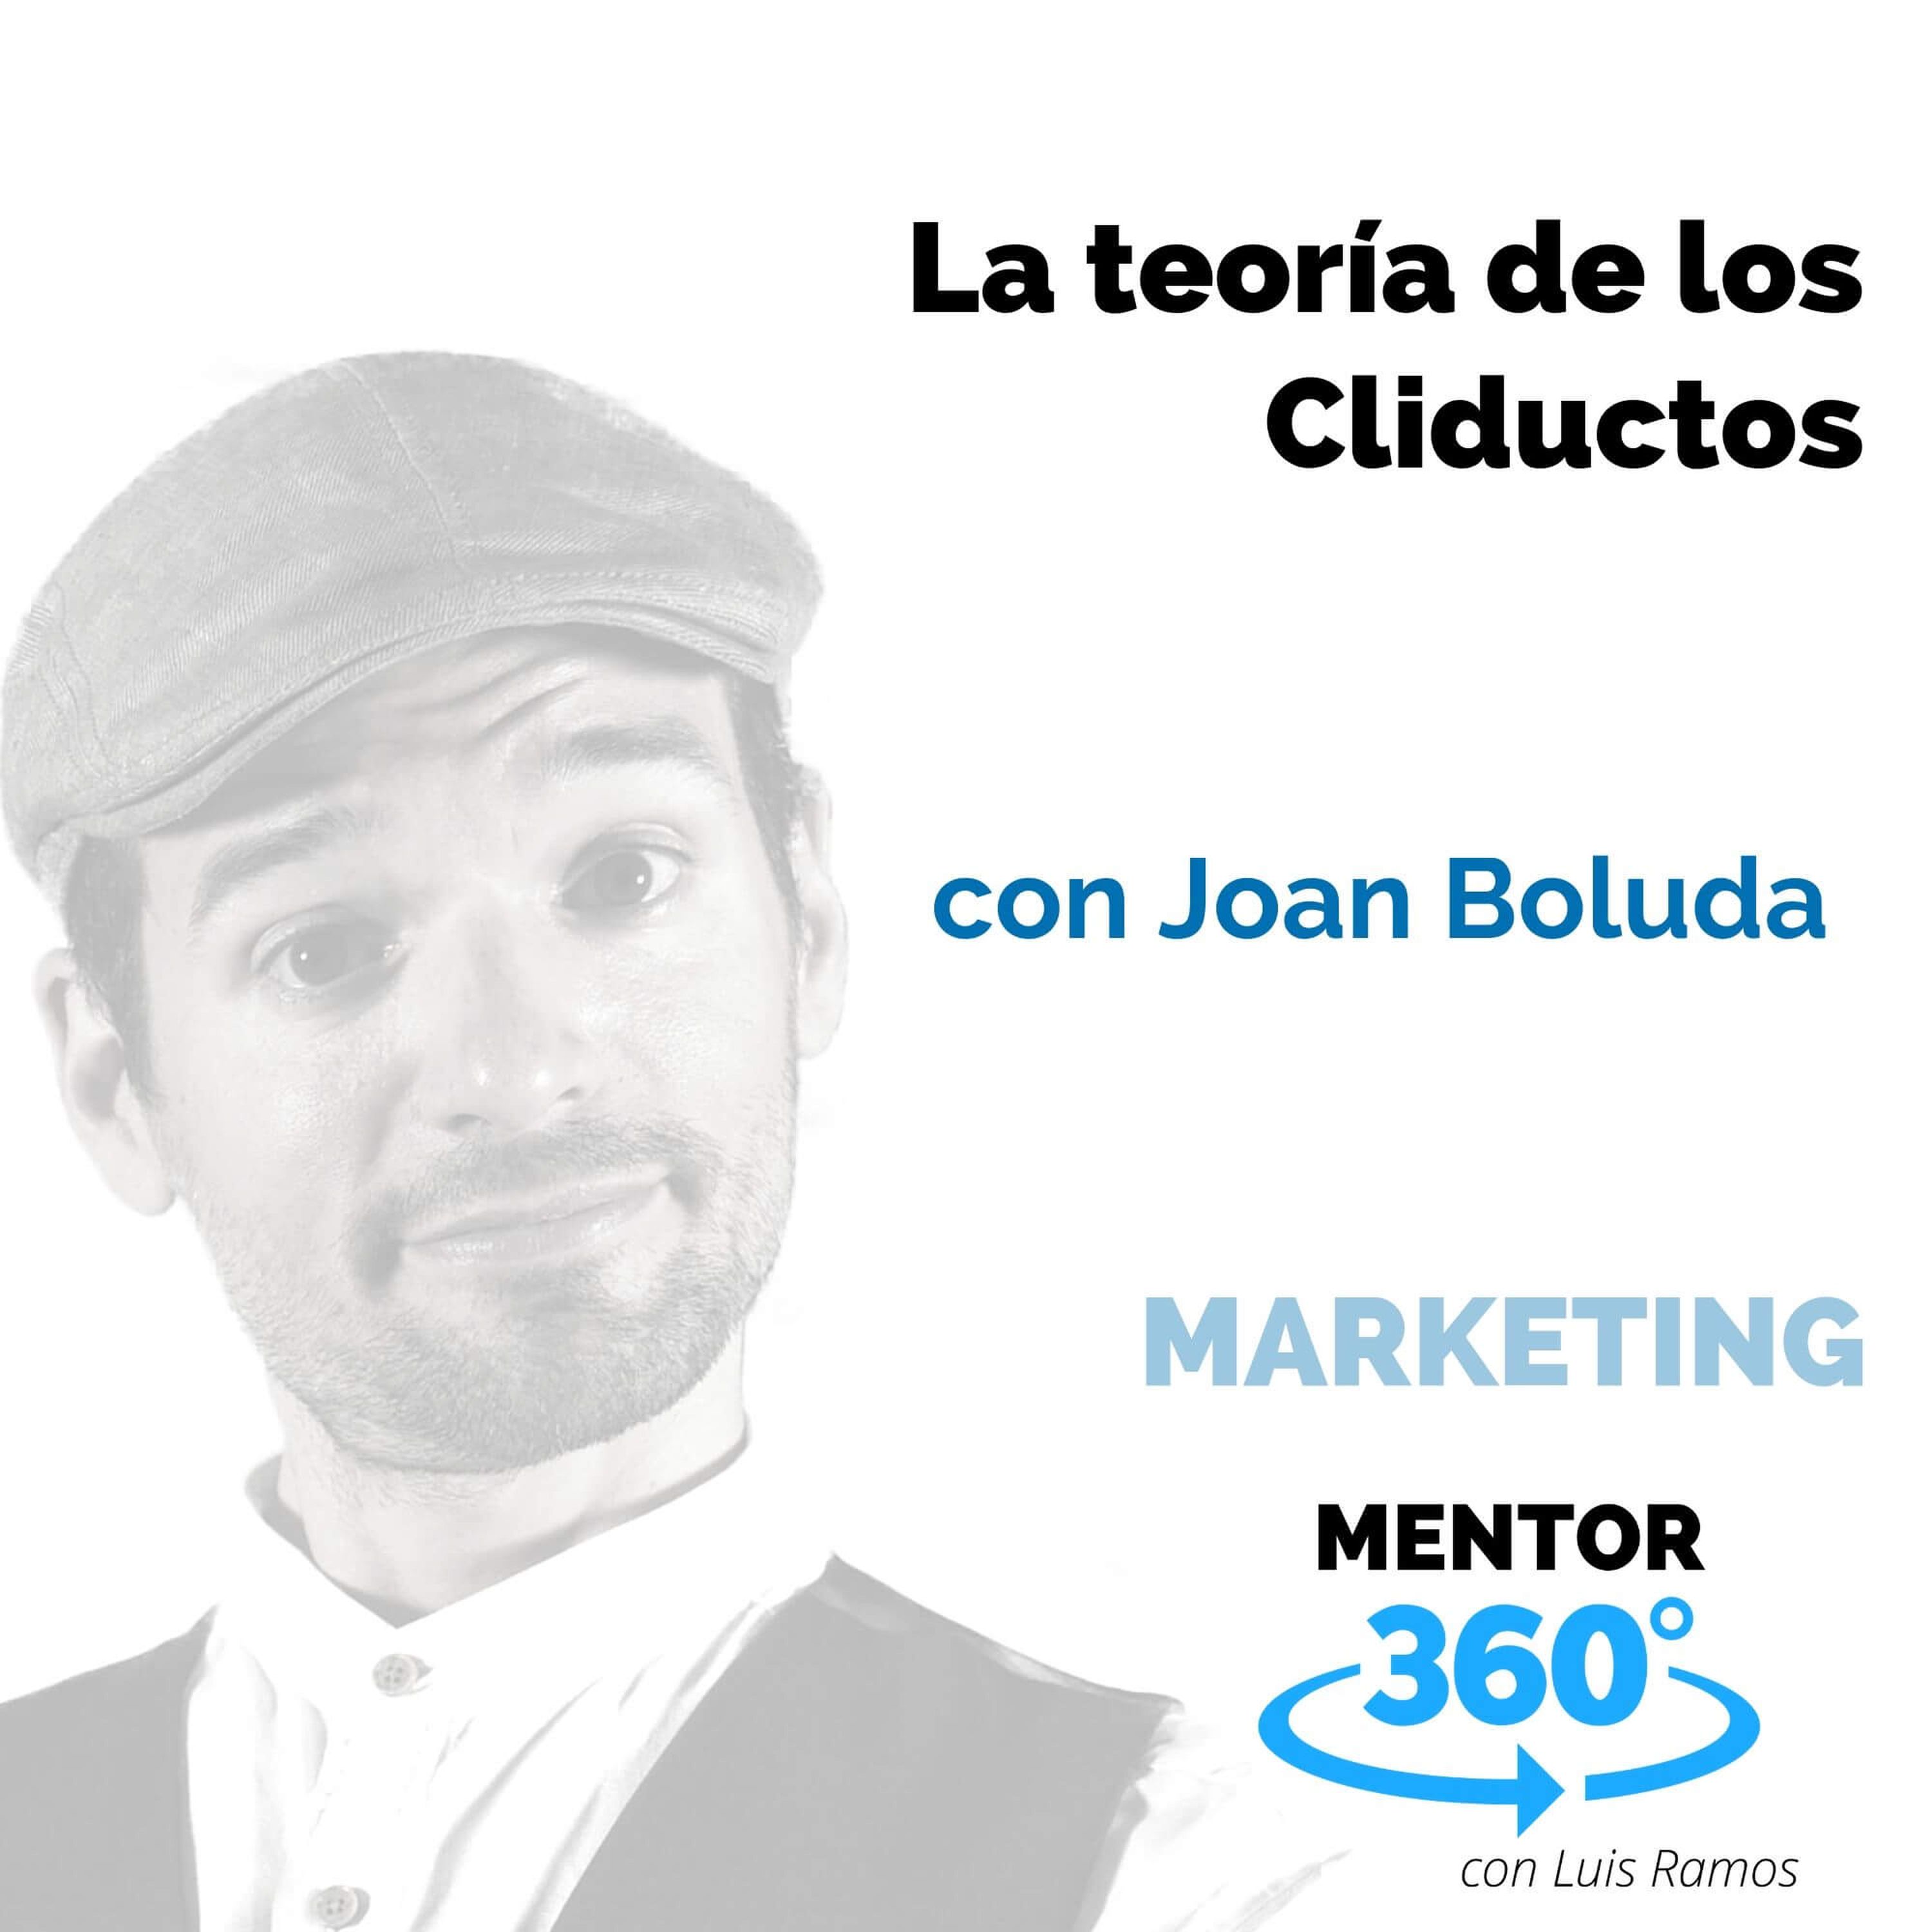 La teoría de los Cliductos, con Joan Boluda - MARKETING - MENTOR360